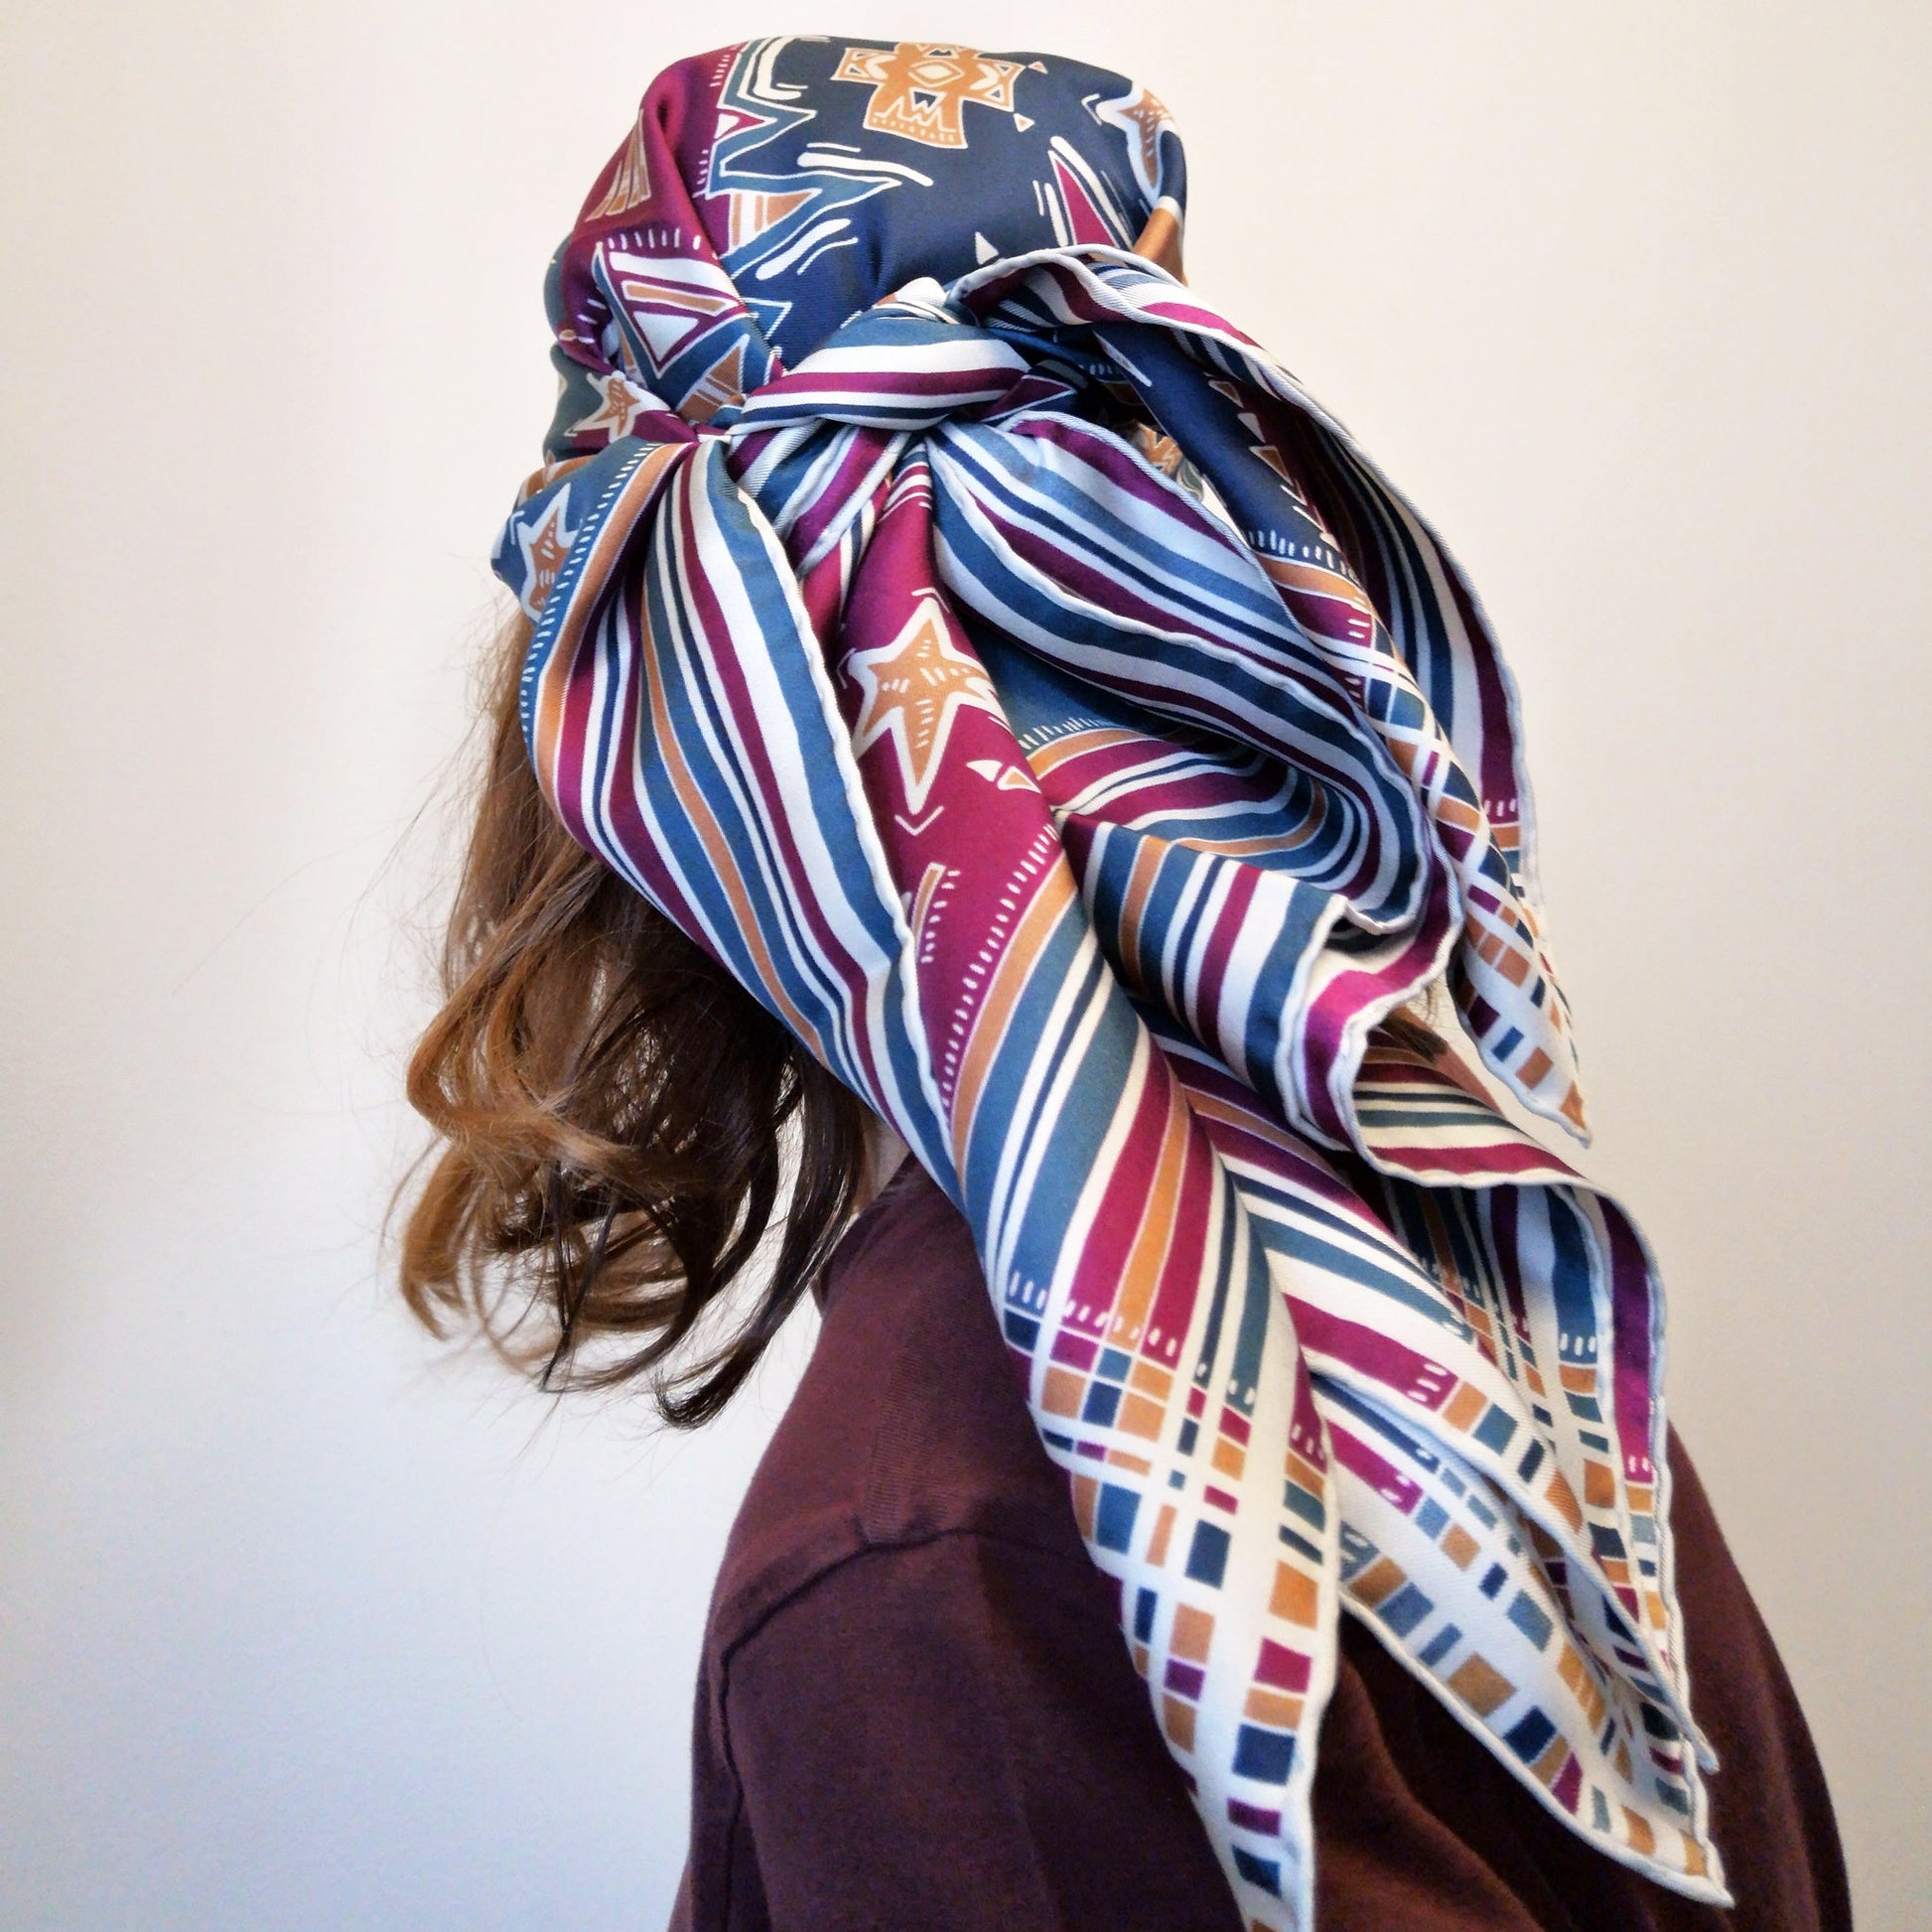 elegante foulard quadrato in seta stampata indossato in testa tramite un nodo colori bordeaux blu